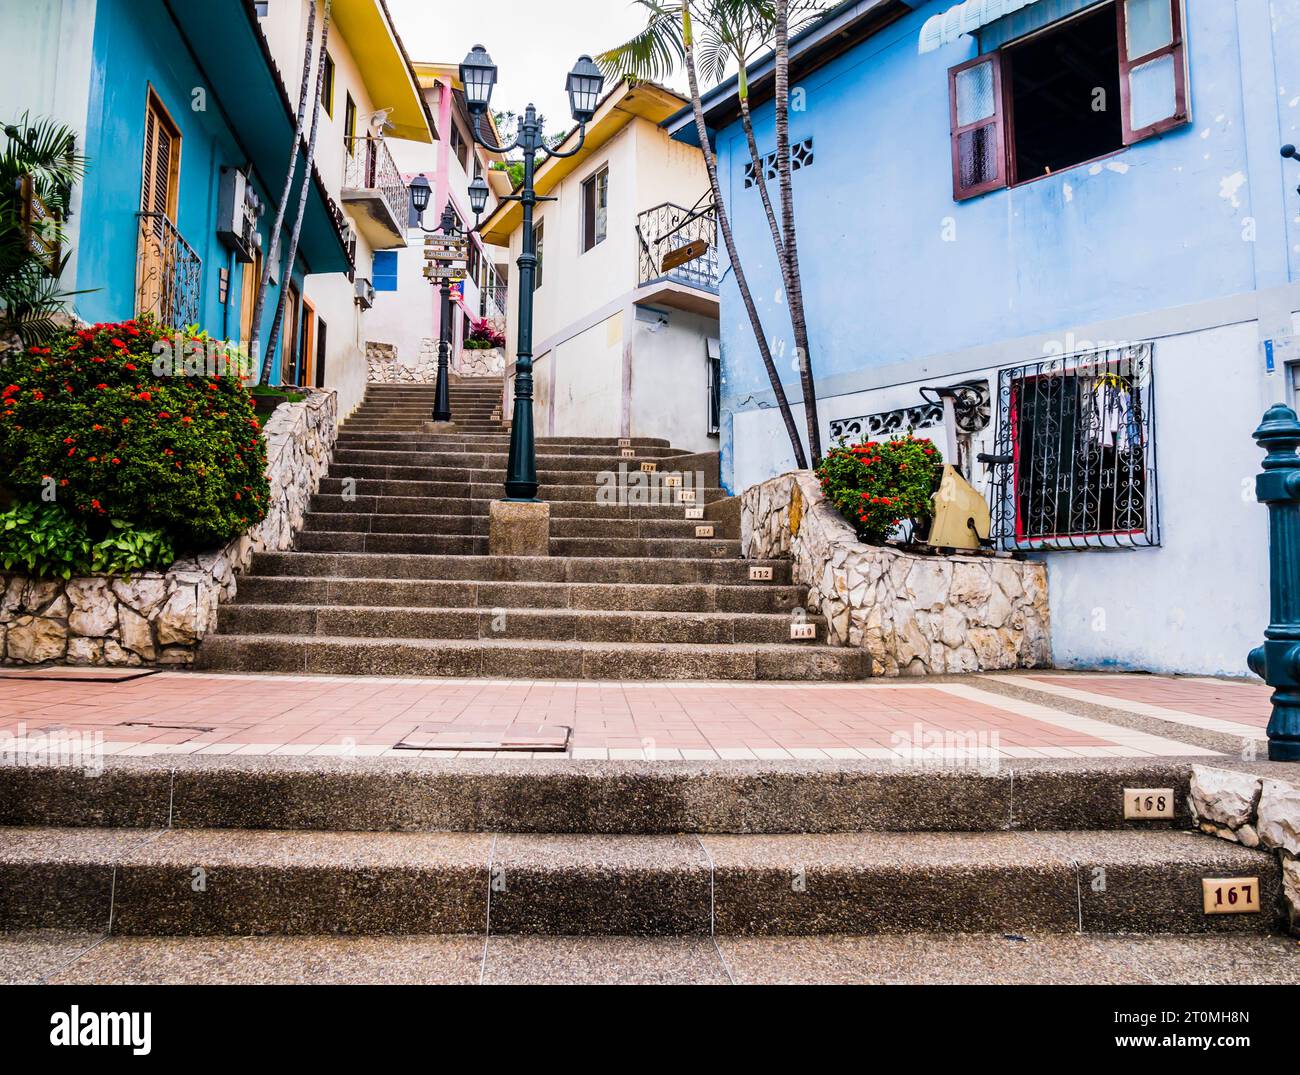 Escalier monumental de la colline de Santa Ana avec des maisons colorées faites dans le style colonial, Guayaquil, Équateur Banque D'Images